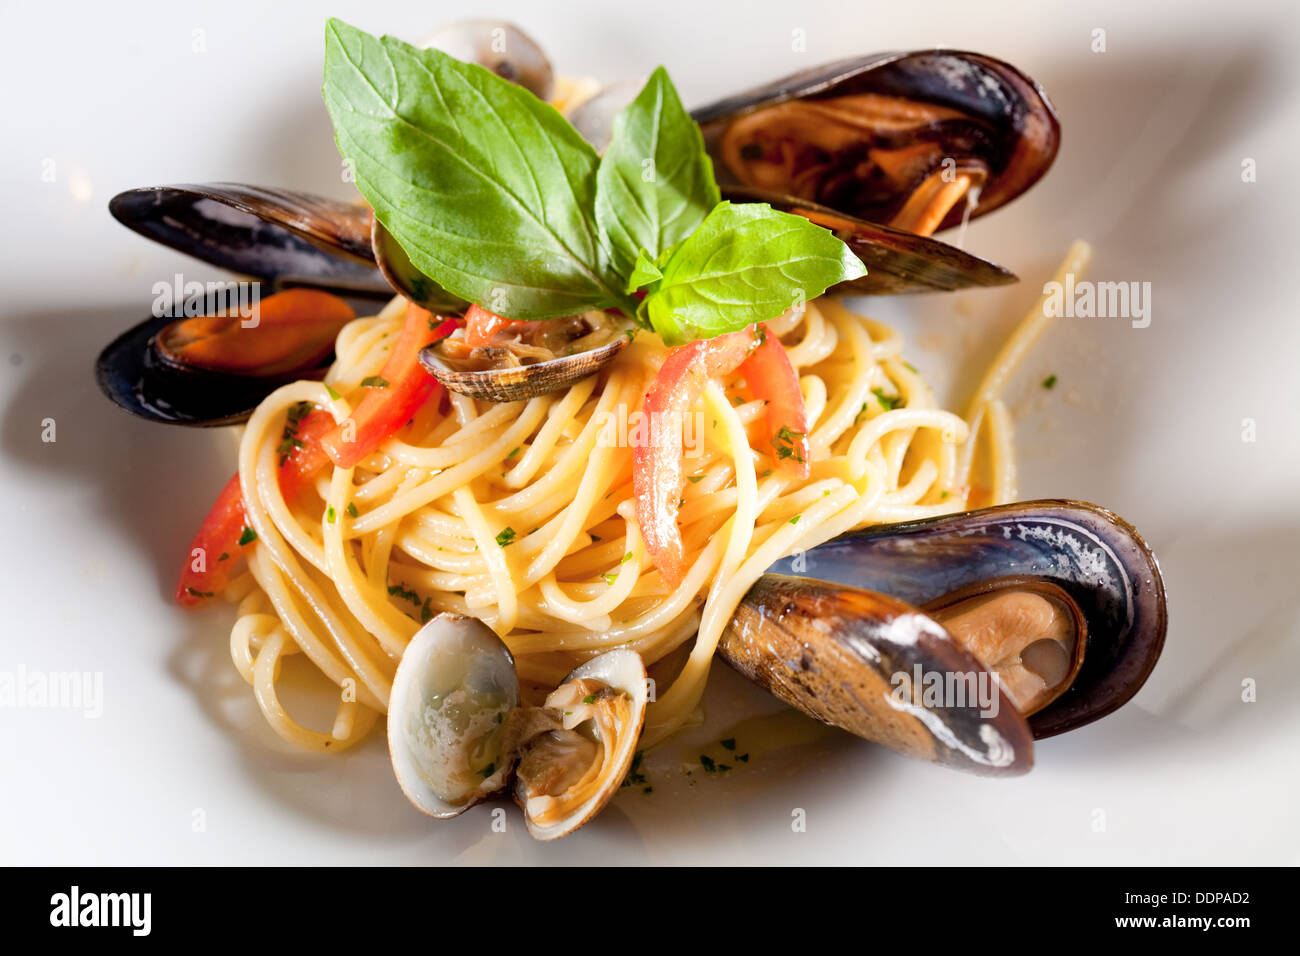 Pasta mit Meeresfrüchten (Muscheln). Stockfoto